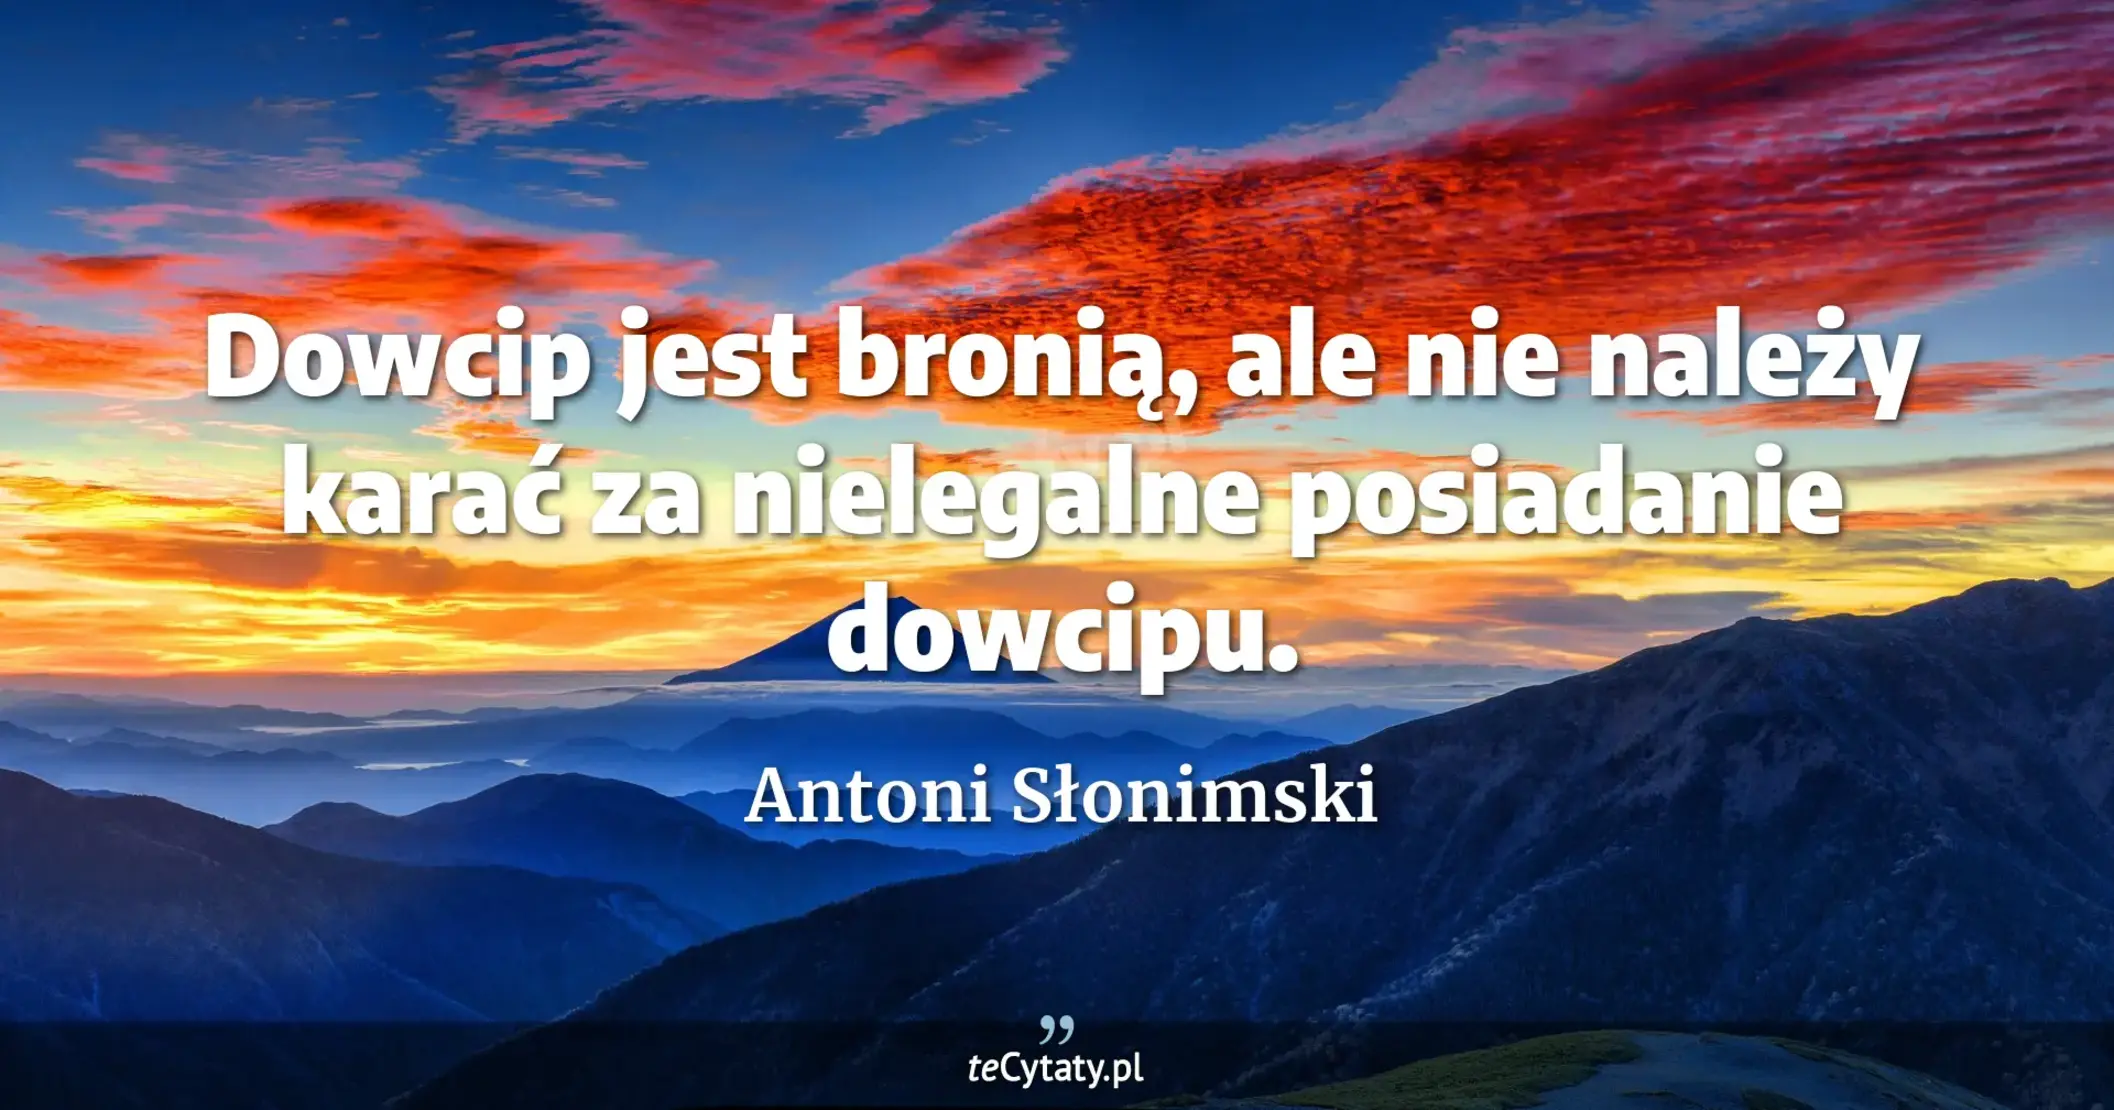 Dowcip jest bronią, ale nie należy karać za nielegalne posiadanie dowcipu. - Antoni Słonimski